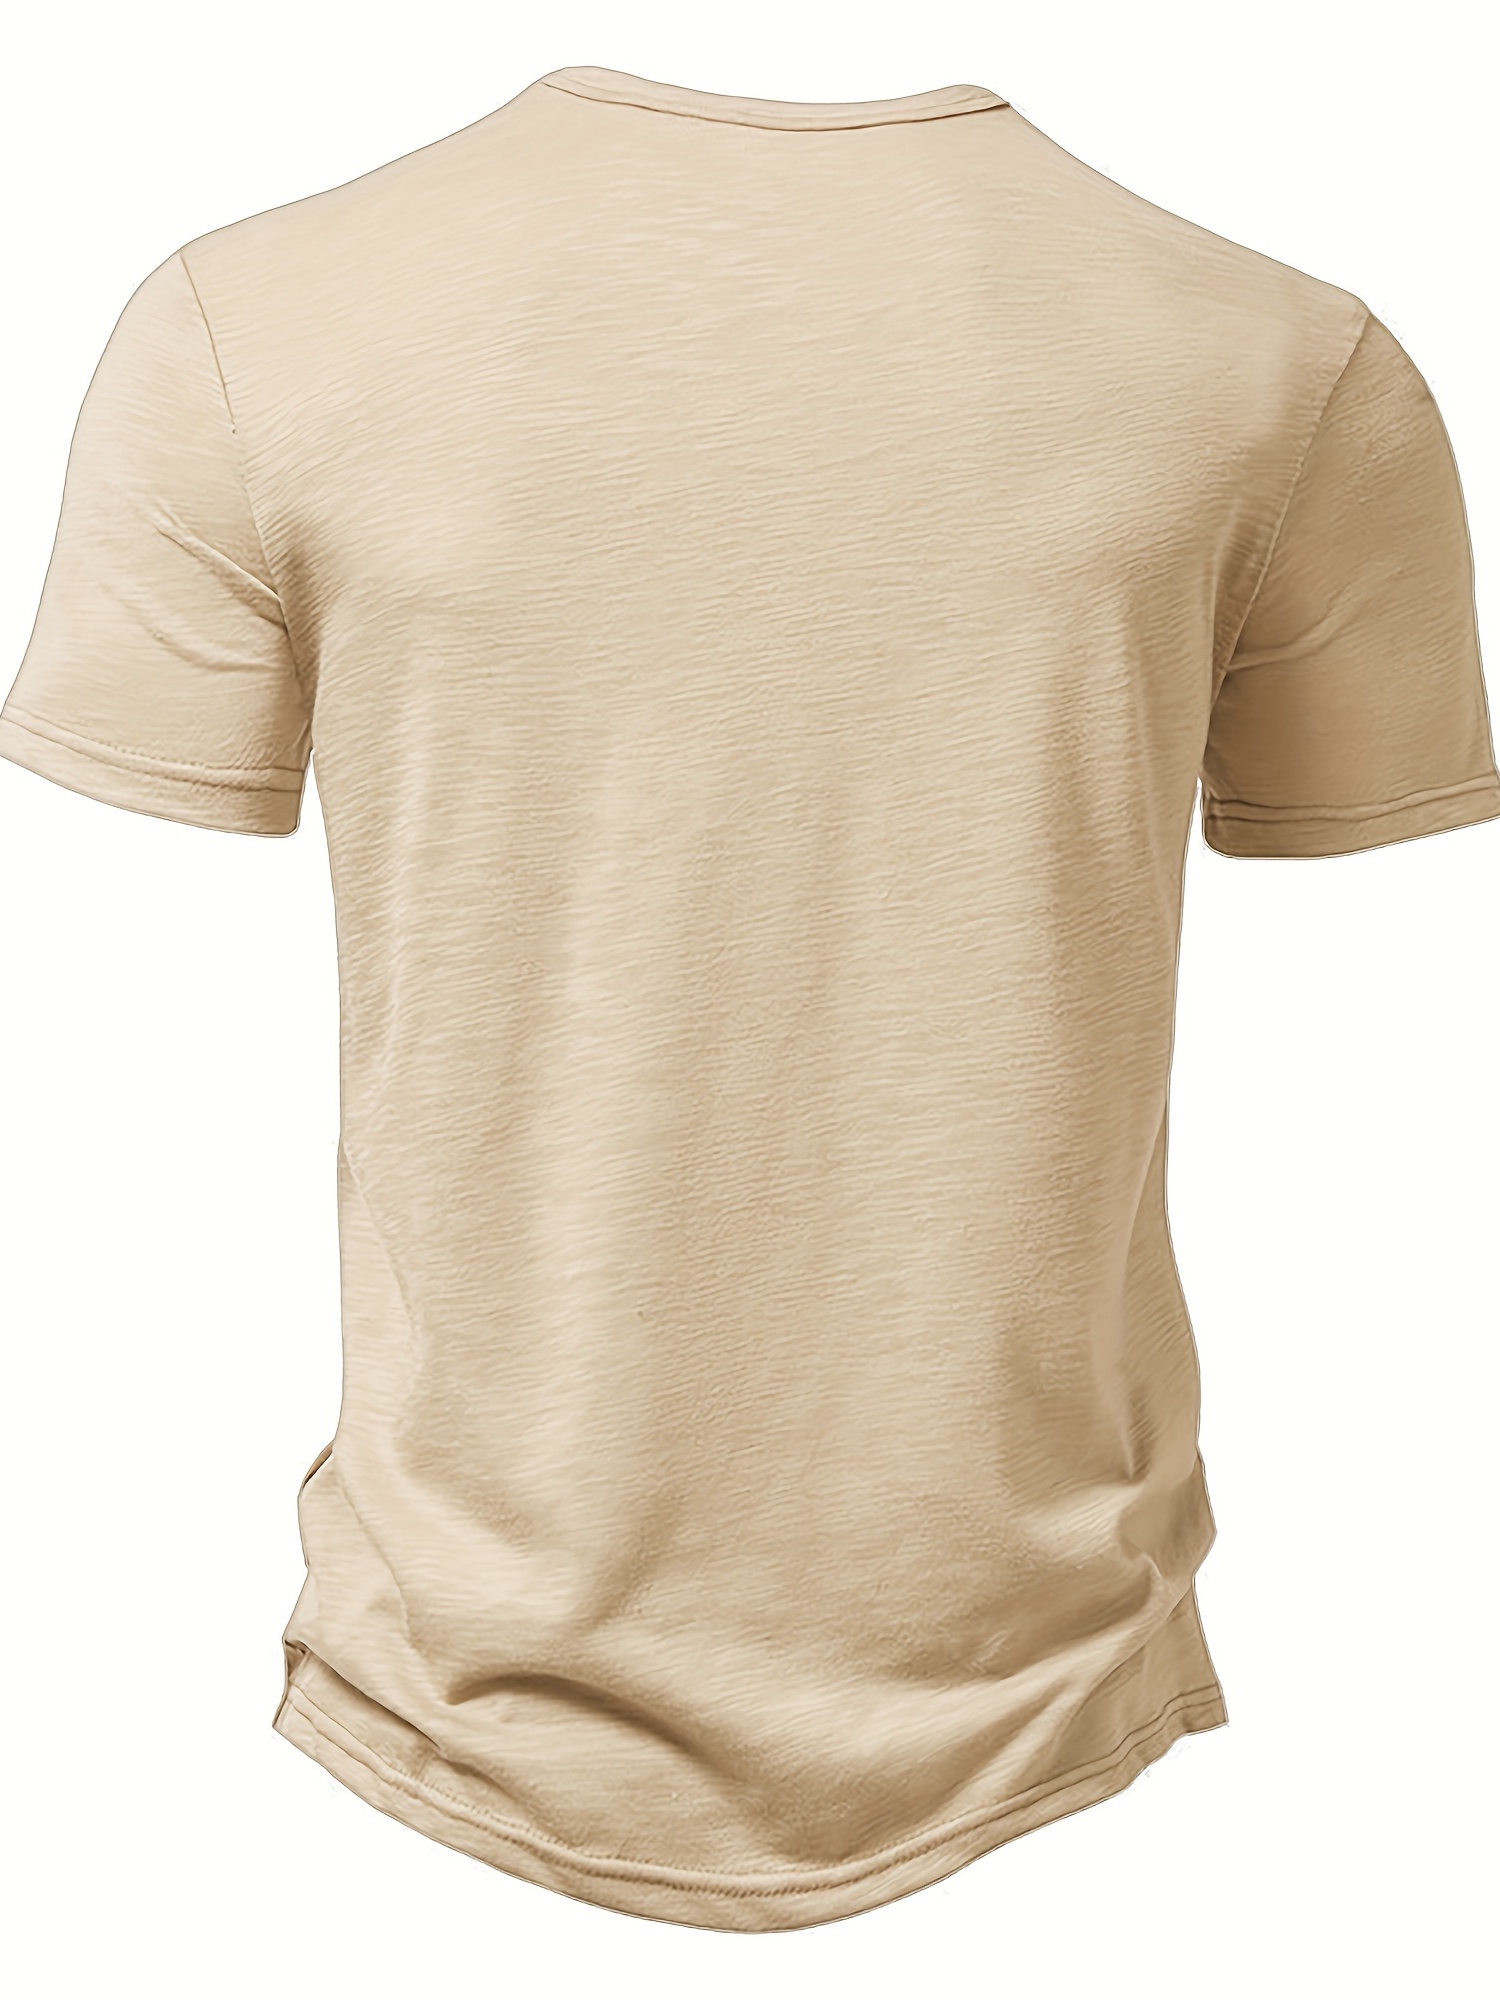 Next Level Physio Short-Sleeve Unisex T-Shirt